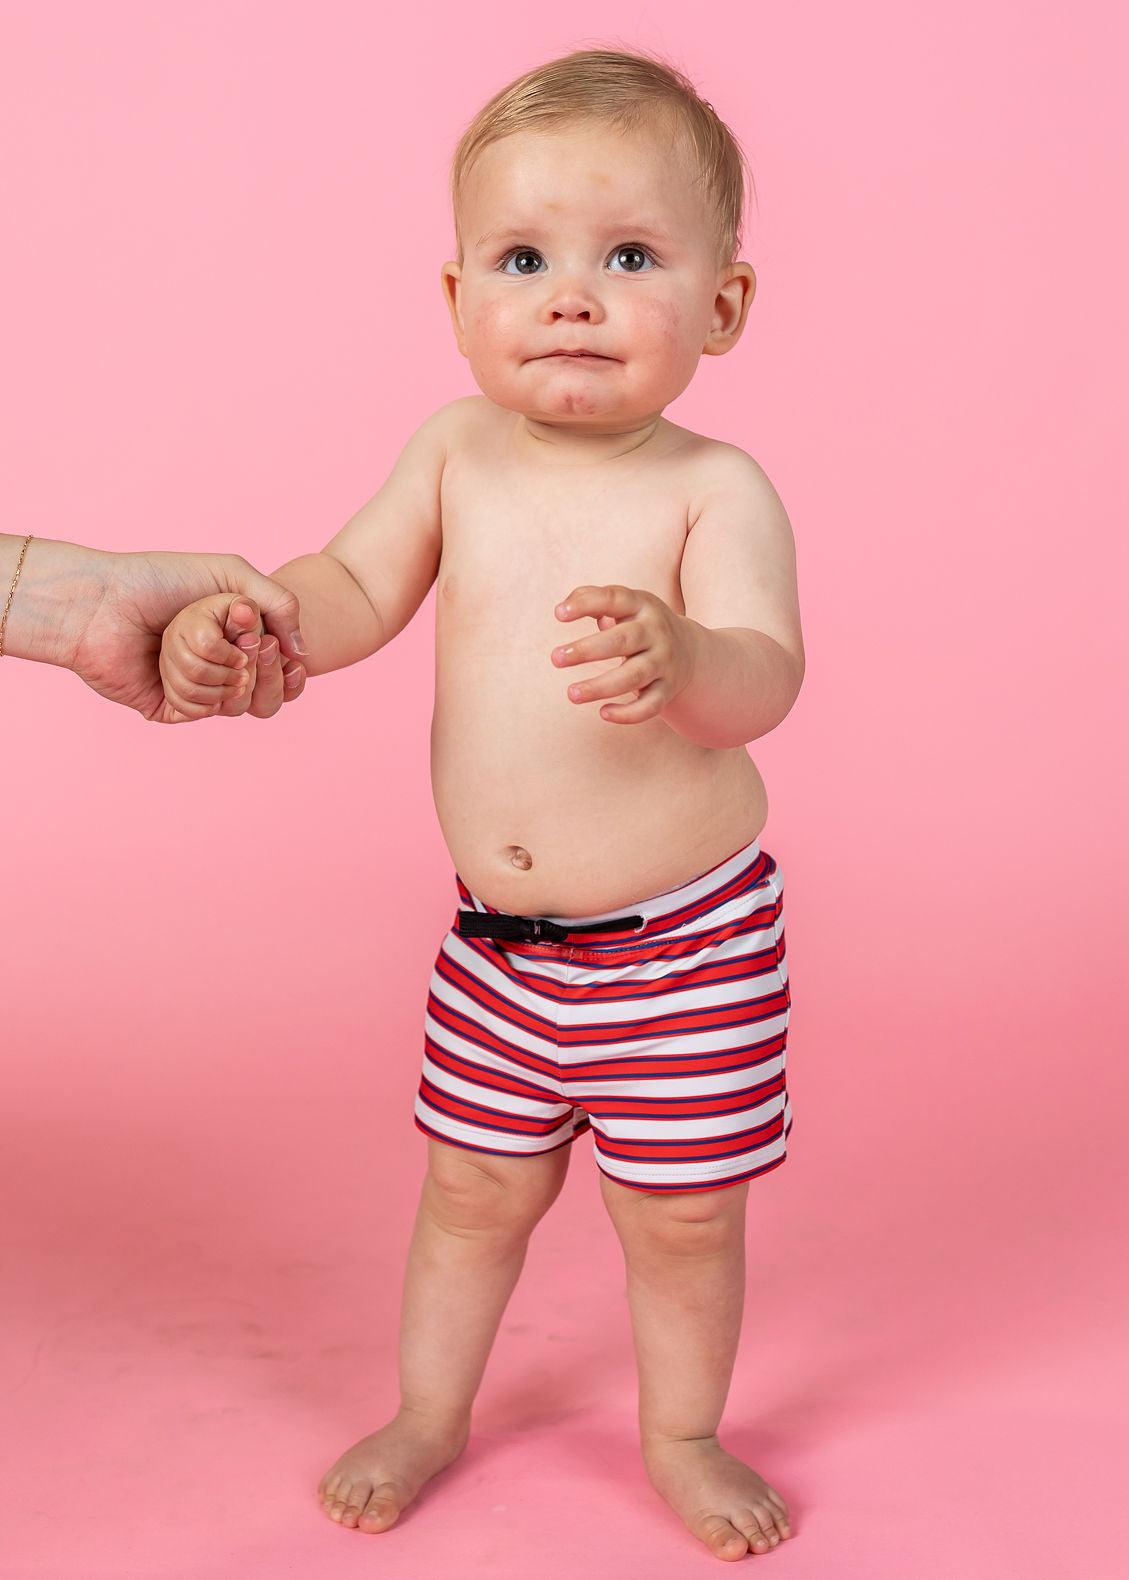 Baby Euro Shorts | Red + Navy Stripes - Kortni Jeane